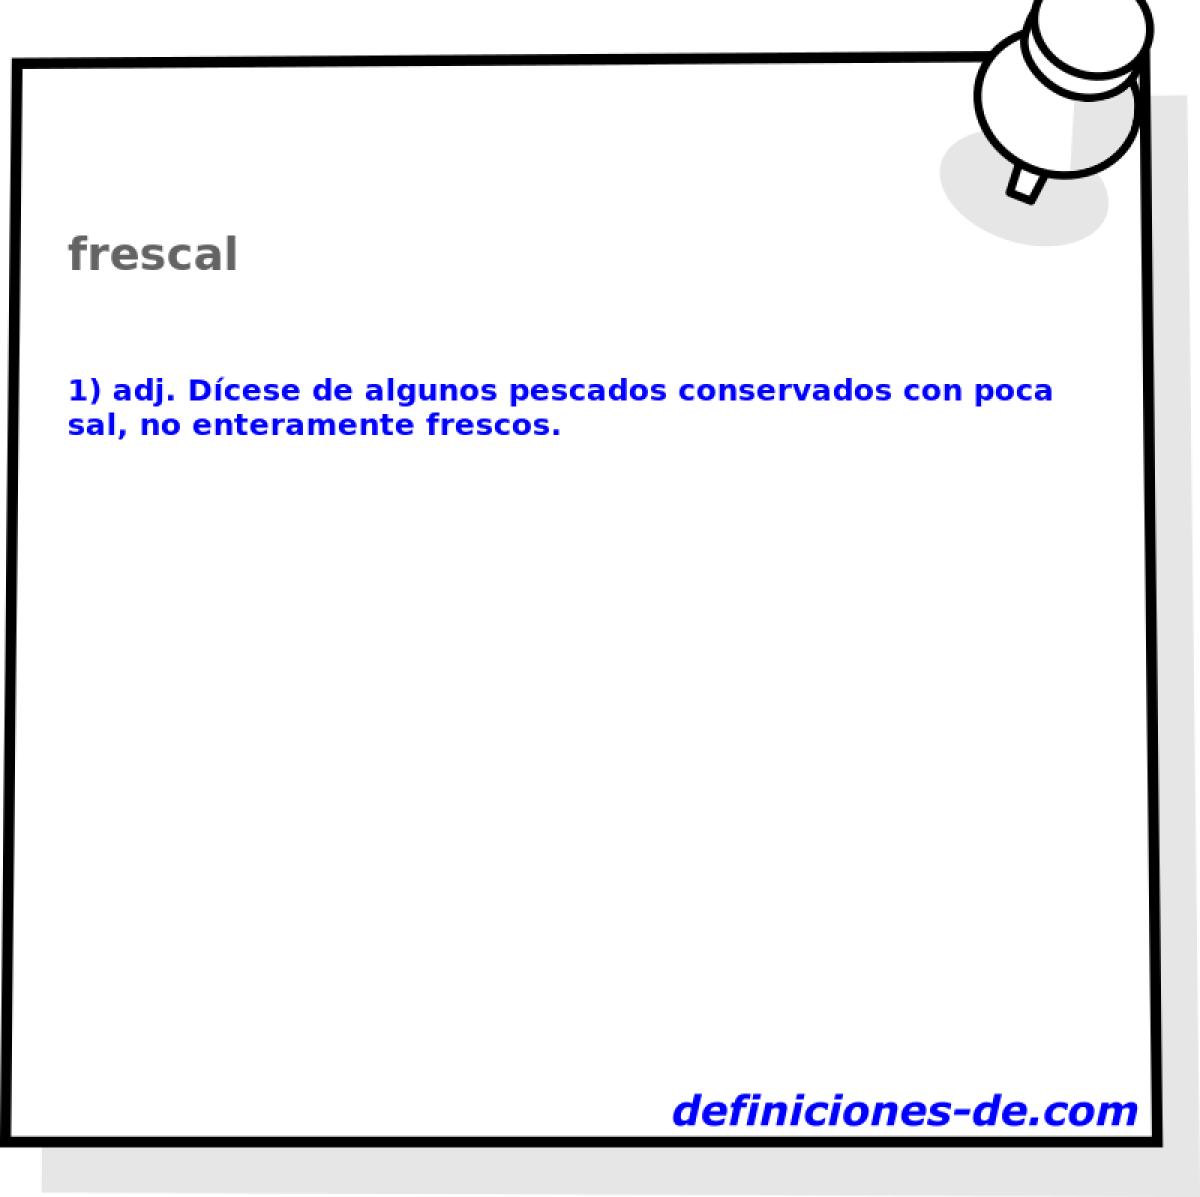 frescal 